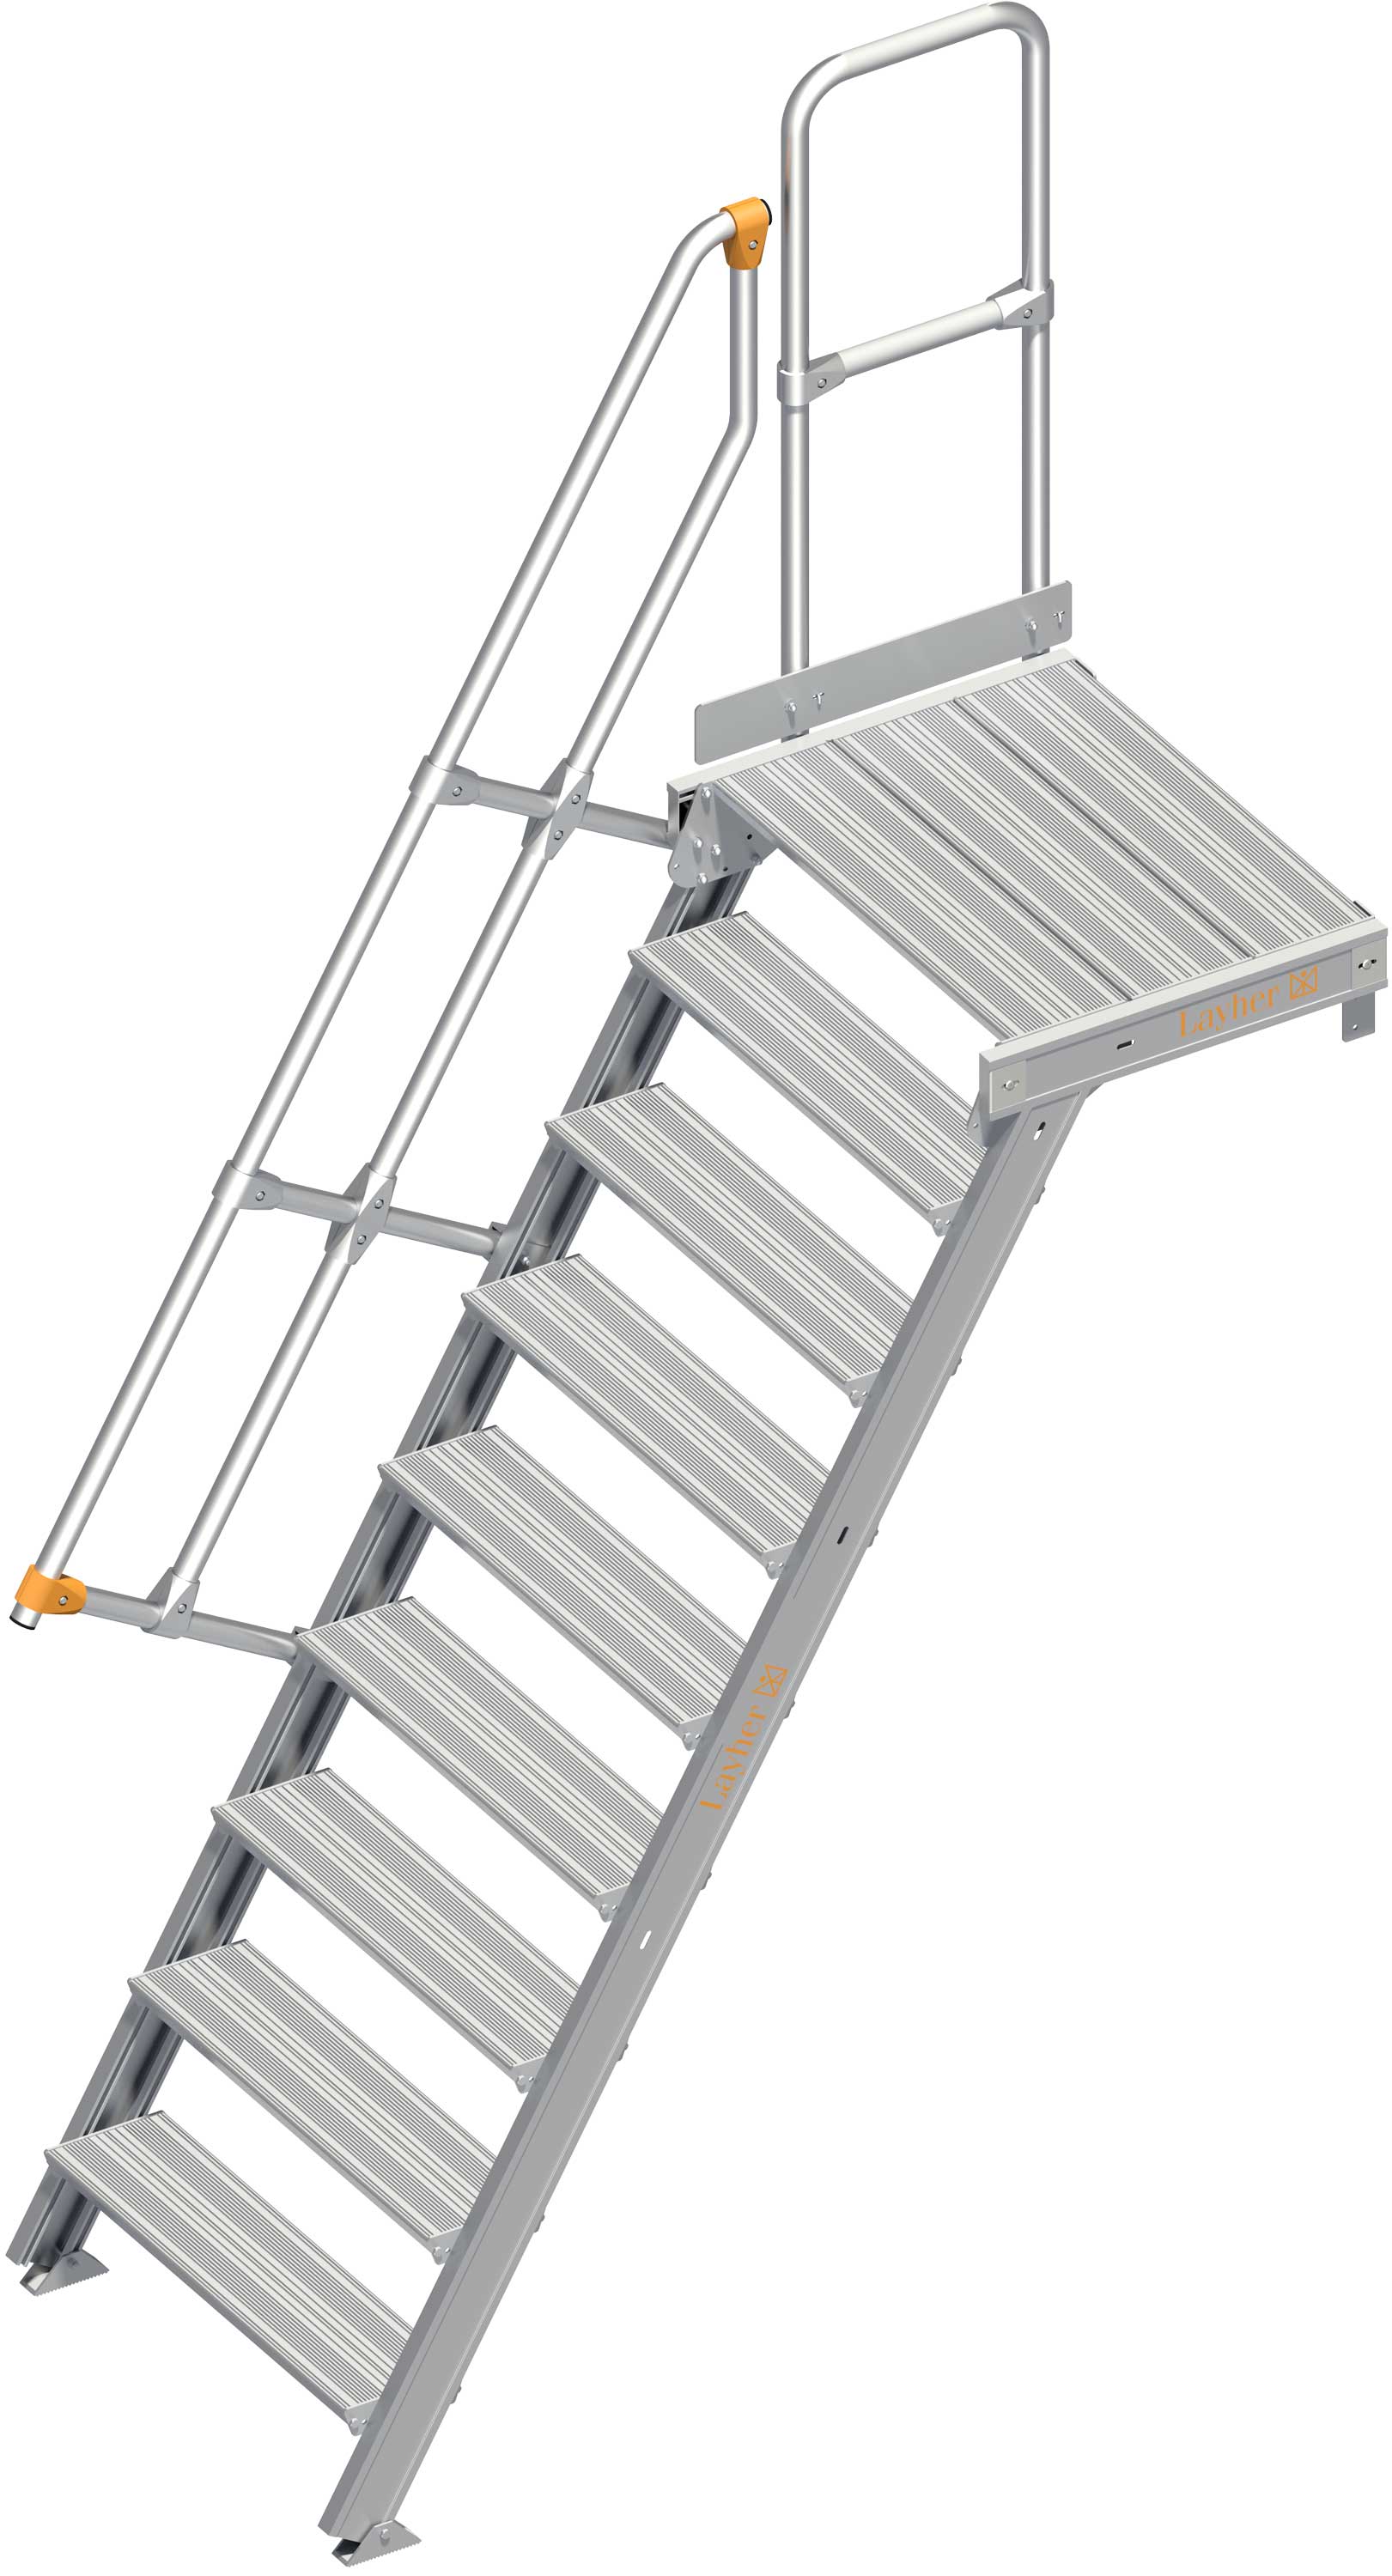 Layher Plattformtreppe 60° SG 9 Stufen - 800 mm breit